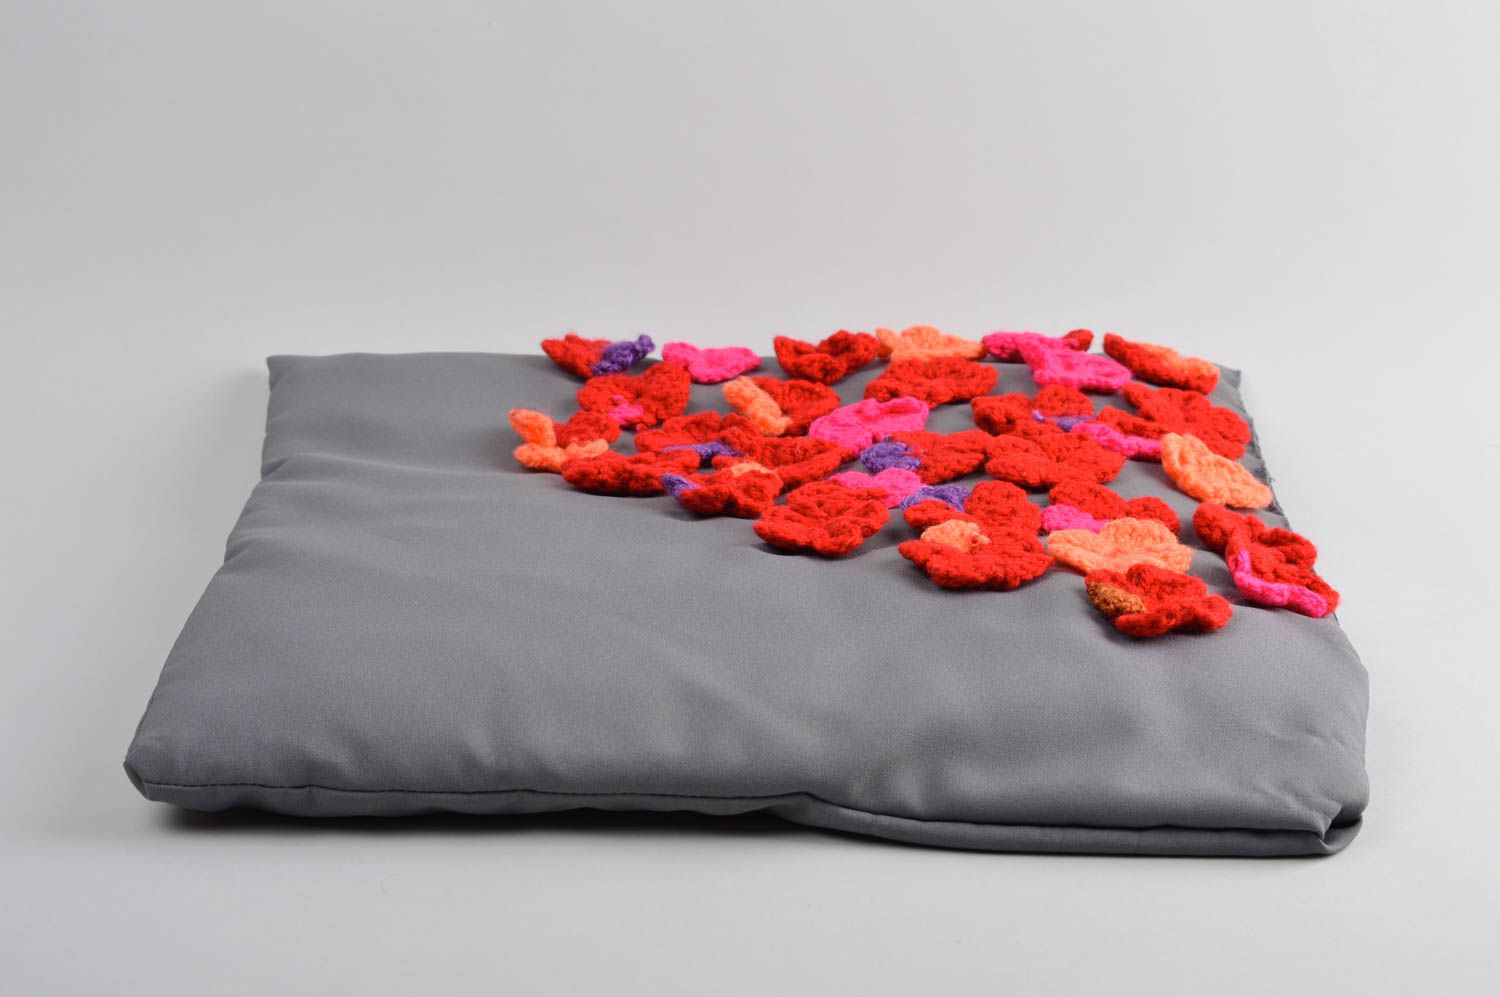 Декоративная подушка хенд мейд подушка на диван серая красивая диванная подушка фото 4